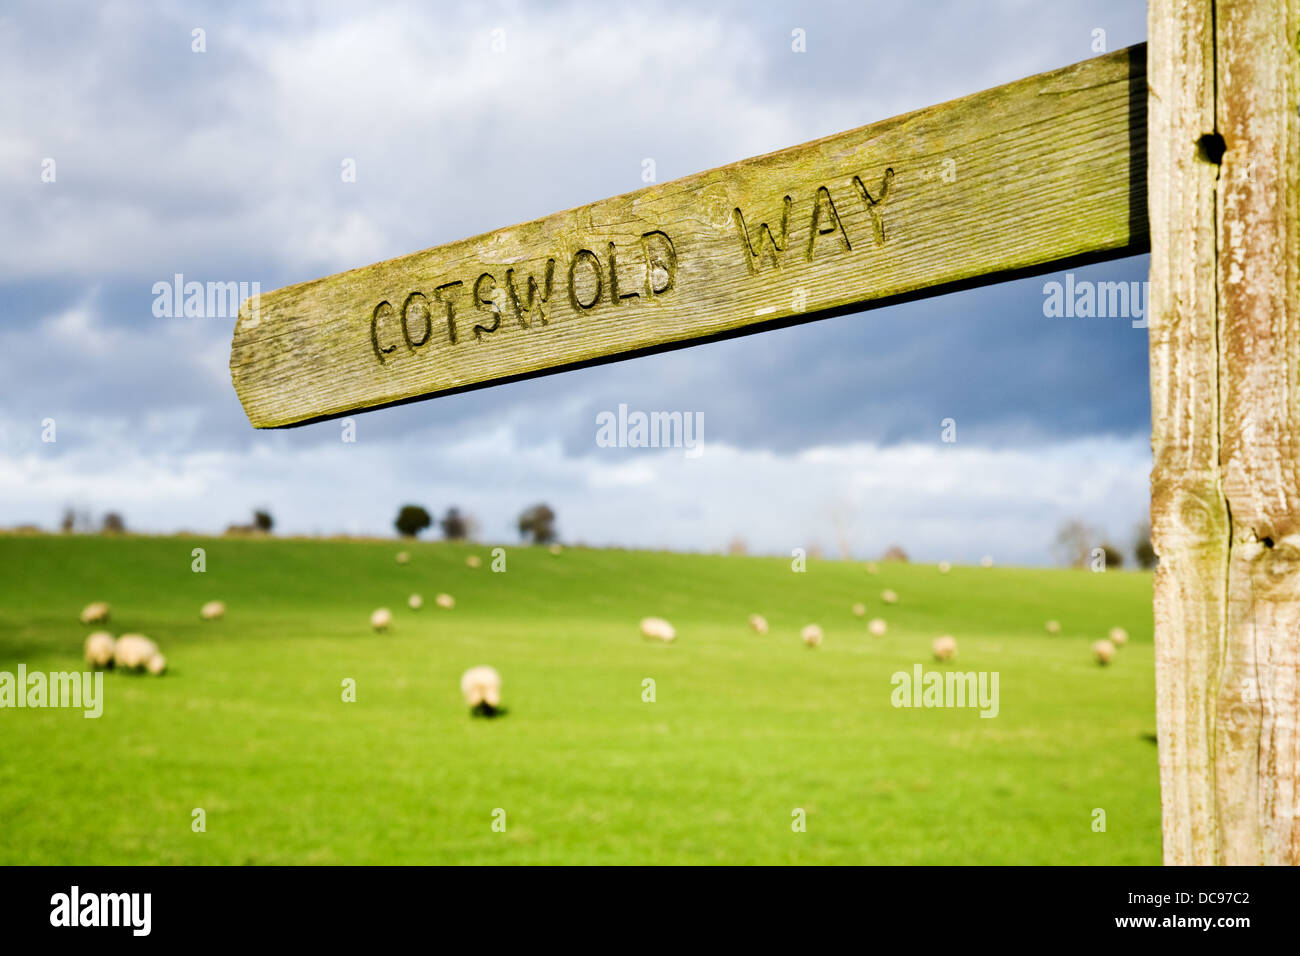 Signer pour le sentier Cotswold Way en Angleterre, Royaume-Uni. Banque D'Images